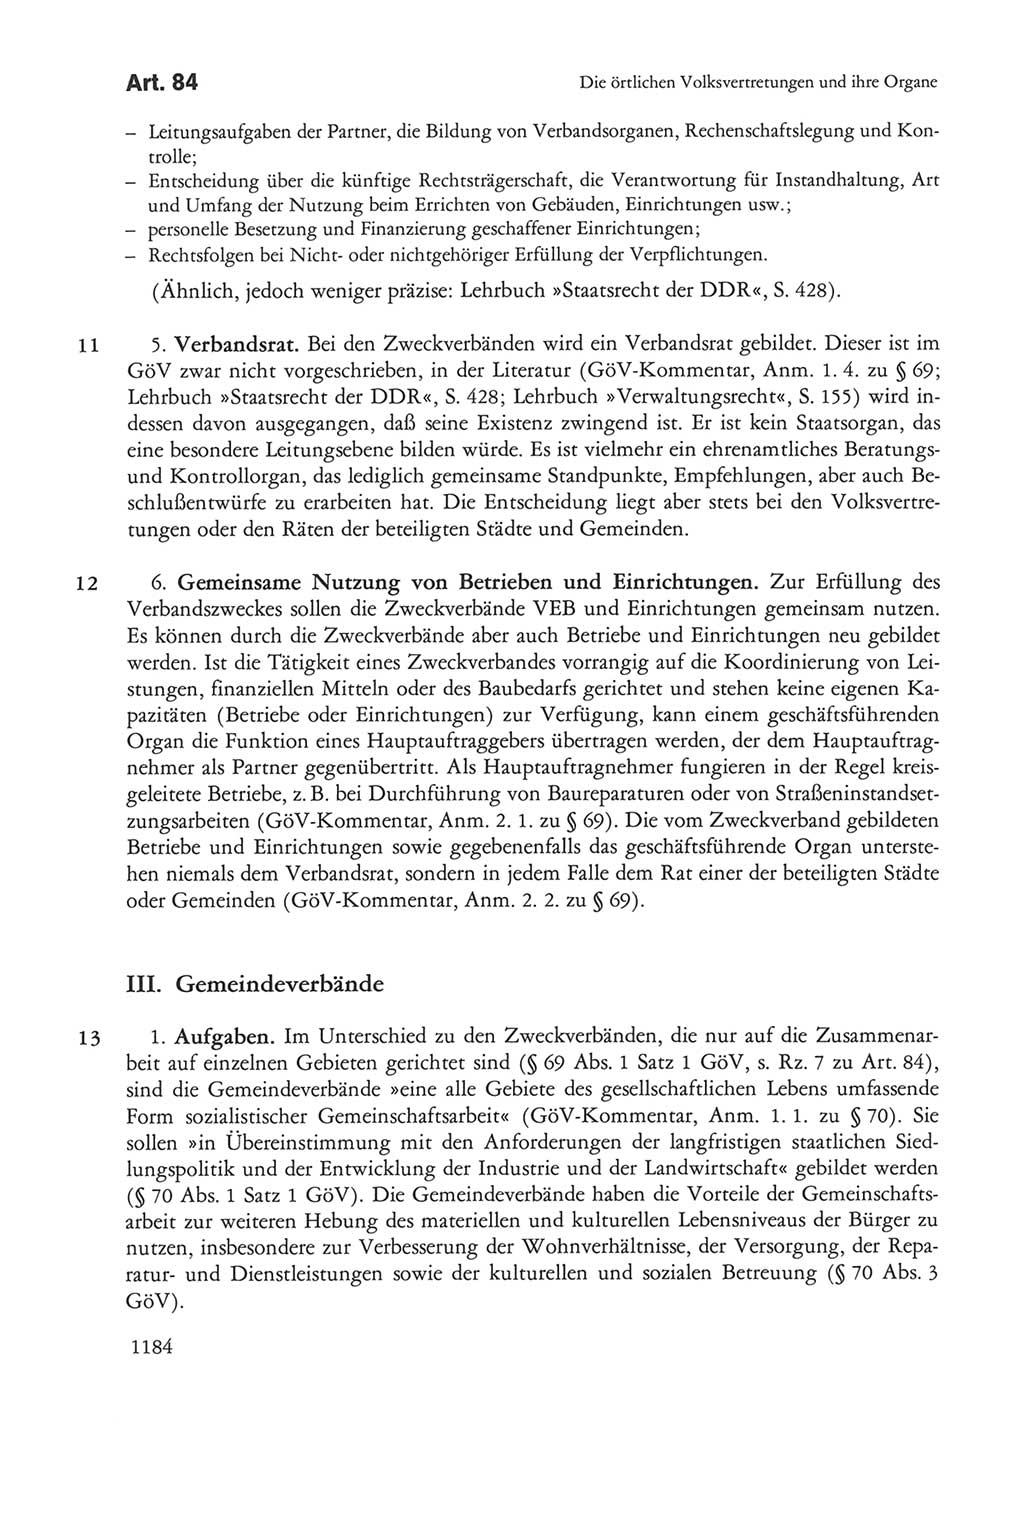 Die sozialistische Verfassung der Deutschen Demokratischen Republik (DDR), Kommentar 1982, Seite 1184 (Soz. Verf. DDR Komm. 1982, S. 1184)